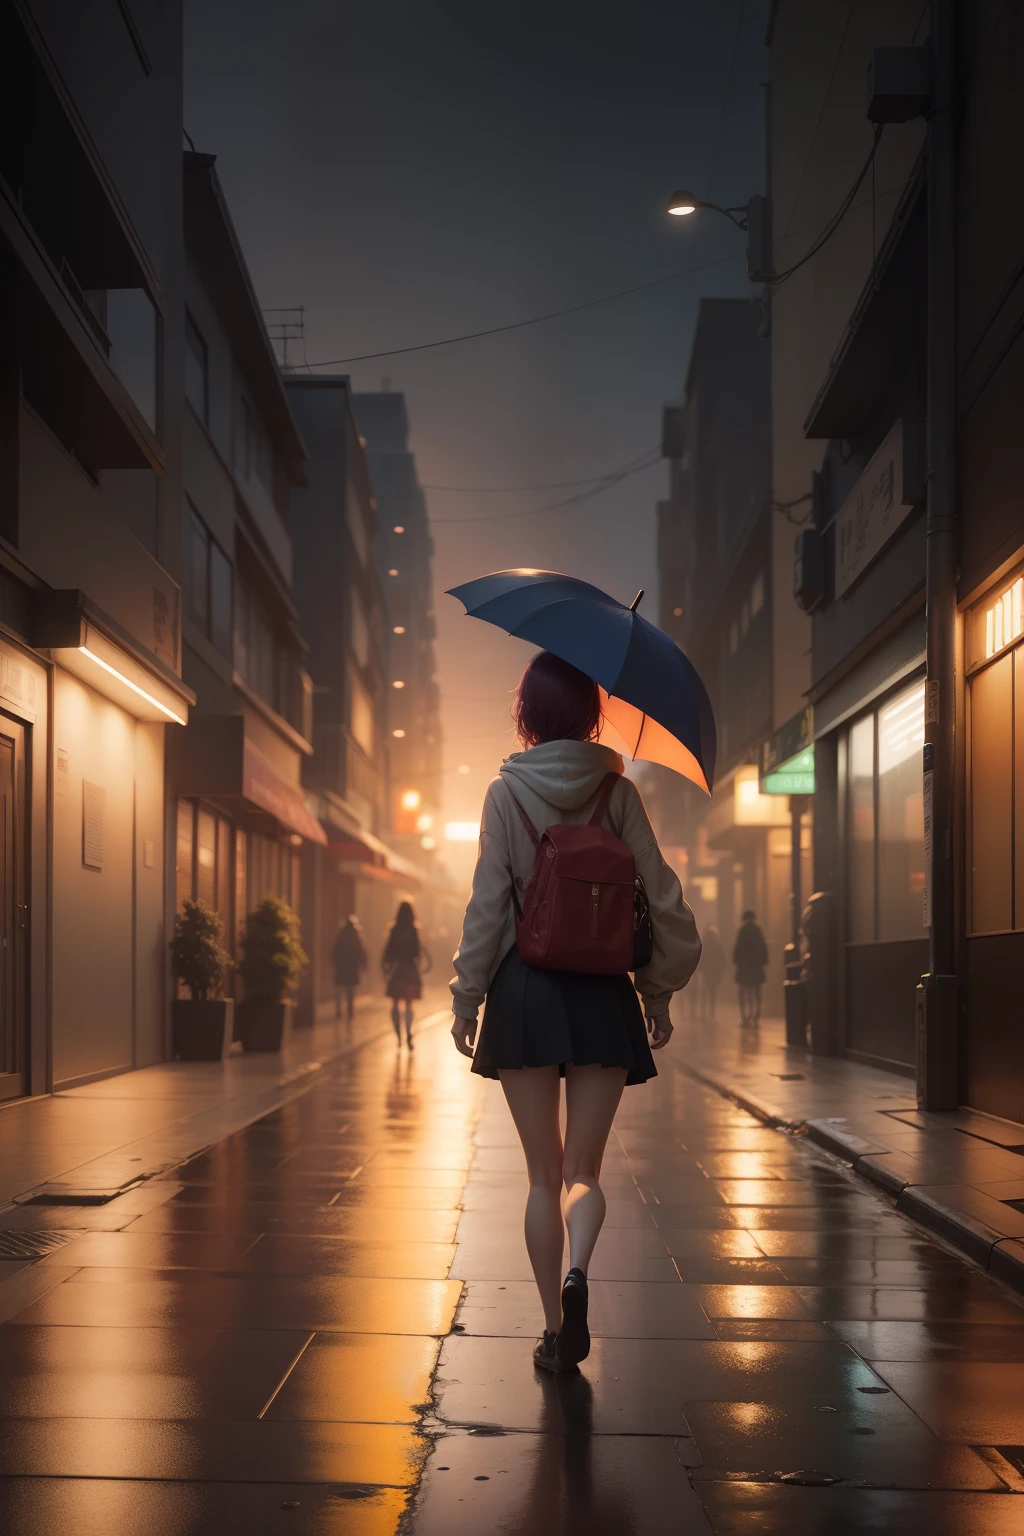 há uma jovem voltando para casa com um guarda-chuva, mulher na casa dos vinte, chuva leve, Cena de anime de Tóquio, estilo de Alena Aenami, pôr do sol calmo, Linda cena de anime, anime atmosférico, Papel de parede de arte anime 4k, papel de parede de arte de anime 8k